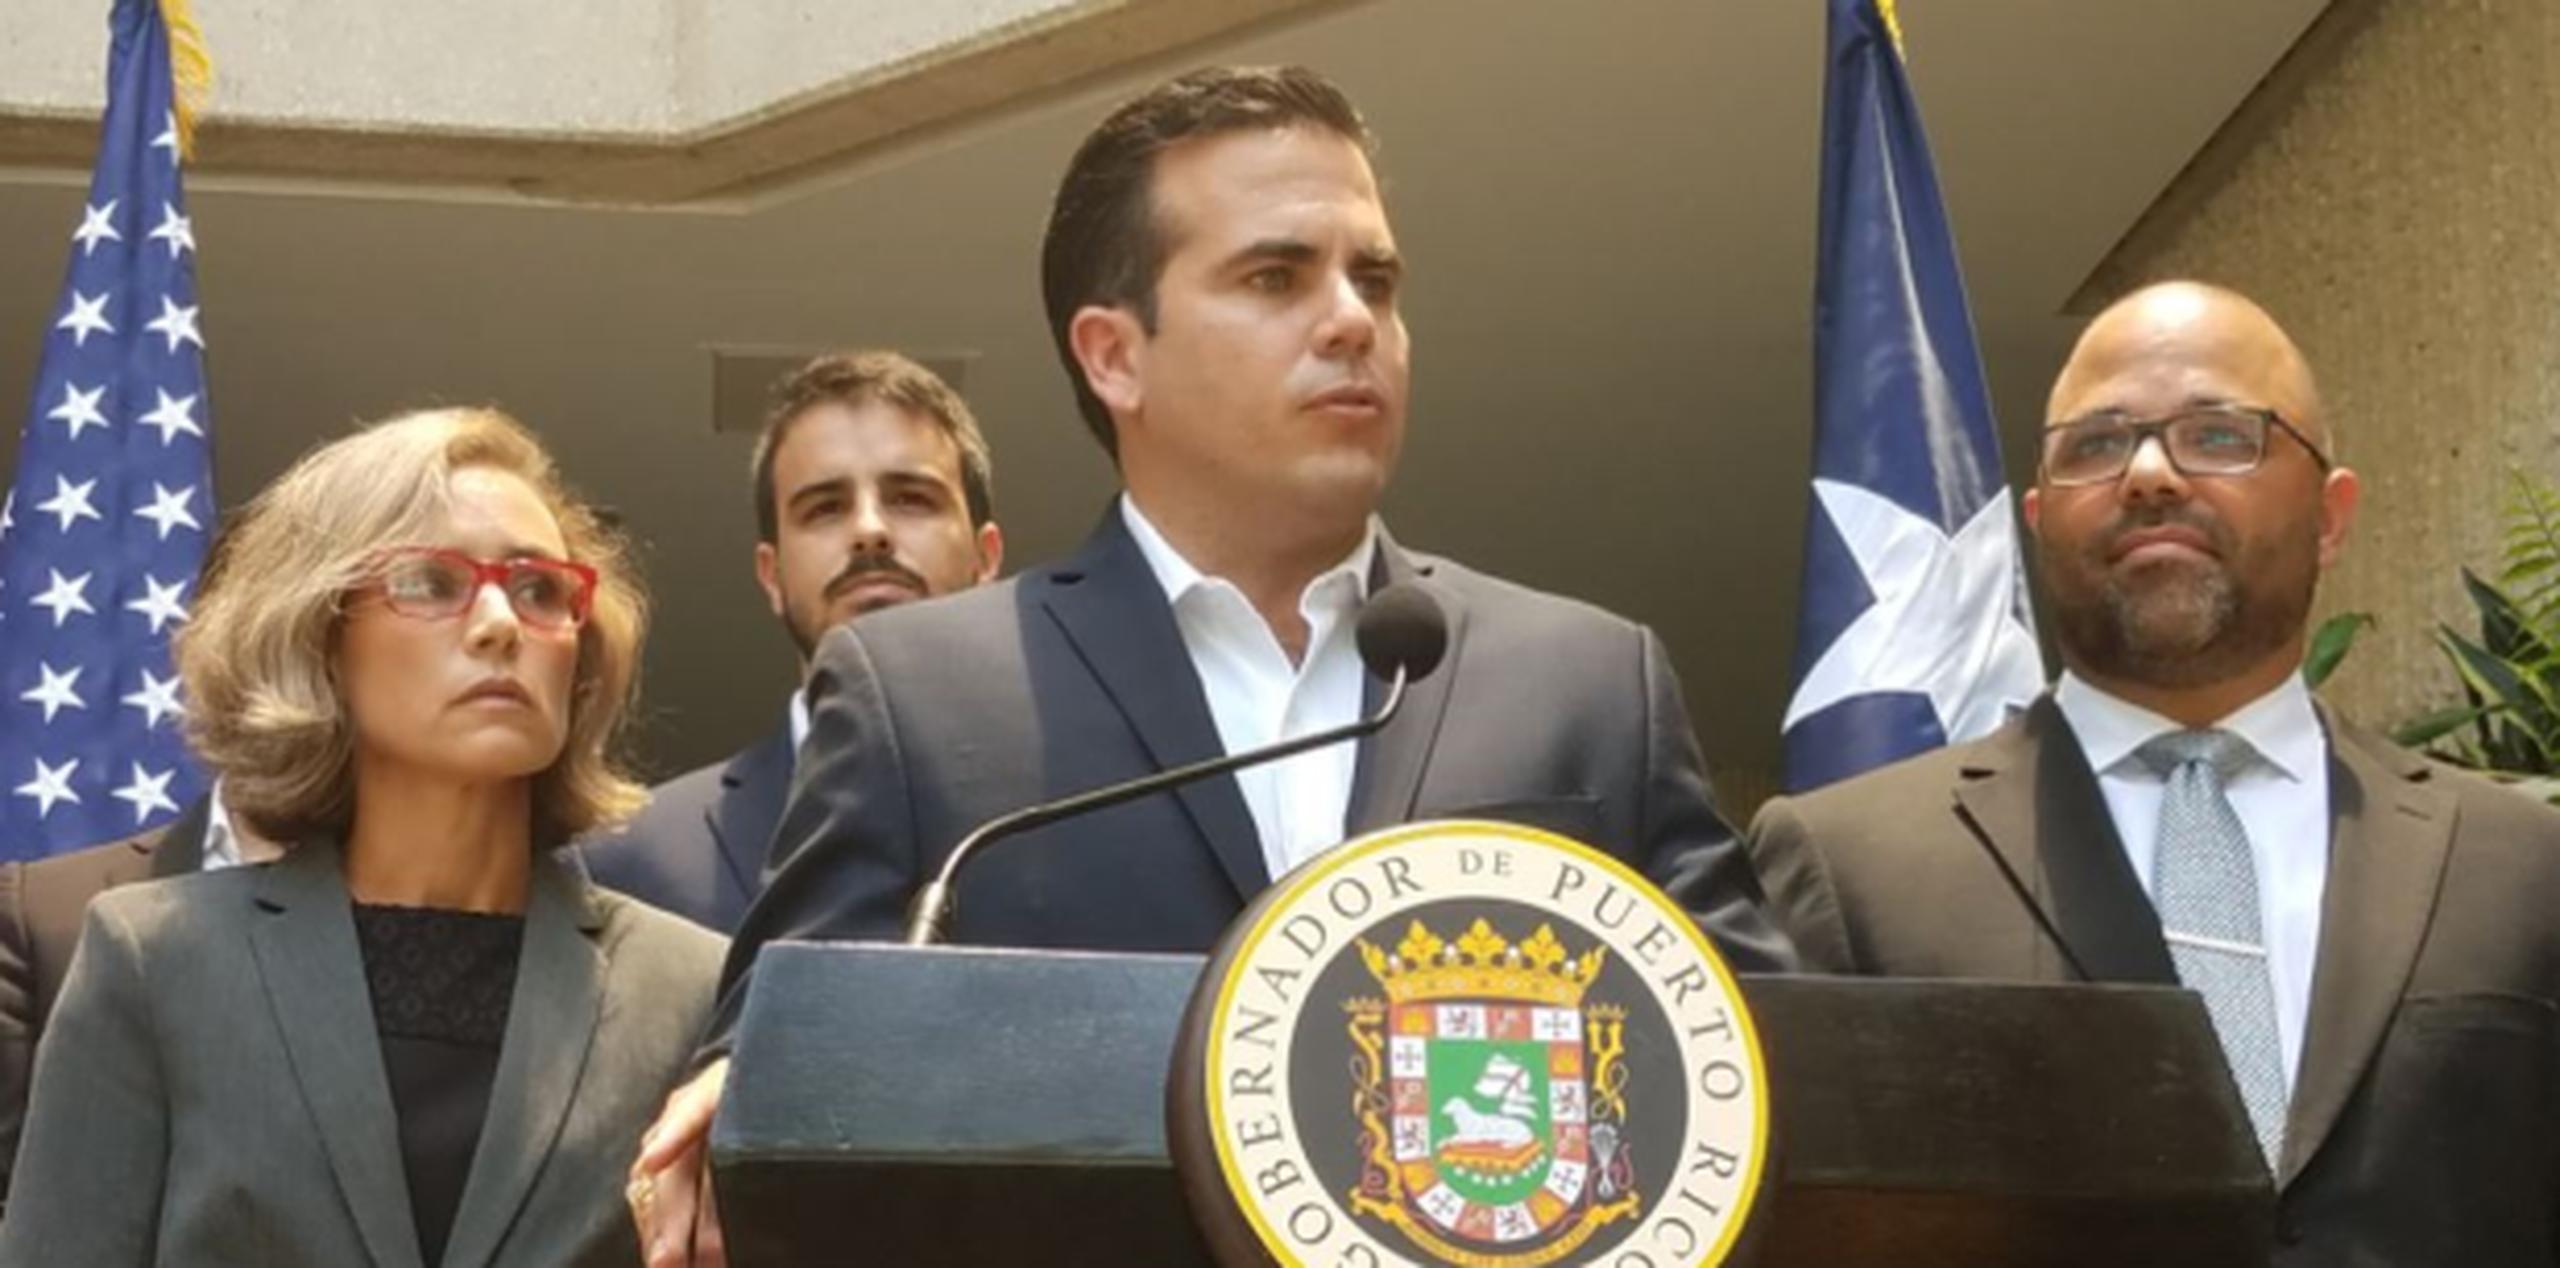 El gobernador nominó formalmente a los licenciados Antonio Monroig y Luis Berríos Amadeo a la Junta de Gobierno de la Universidad de Puerto Rico (UPR), que contará ahora con 10 de sus 14 miembros. (wanda.vega@gfrmedia.com)